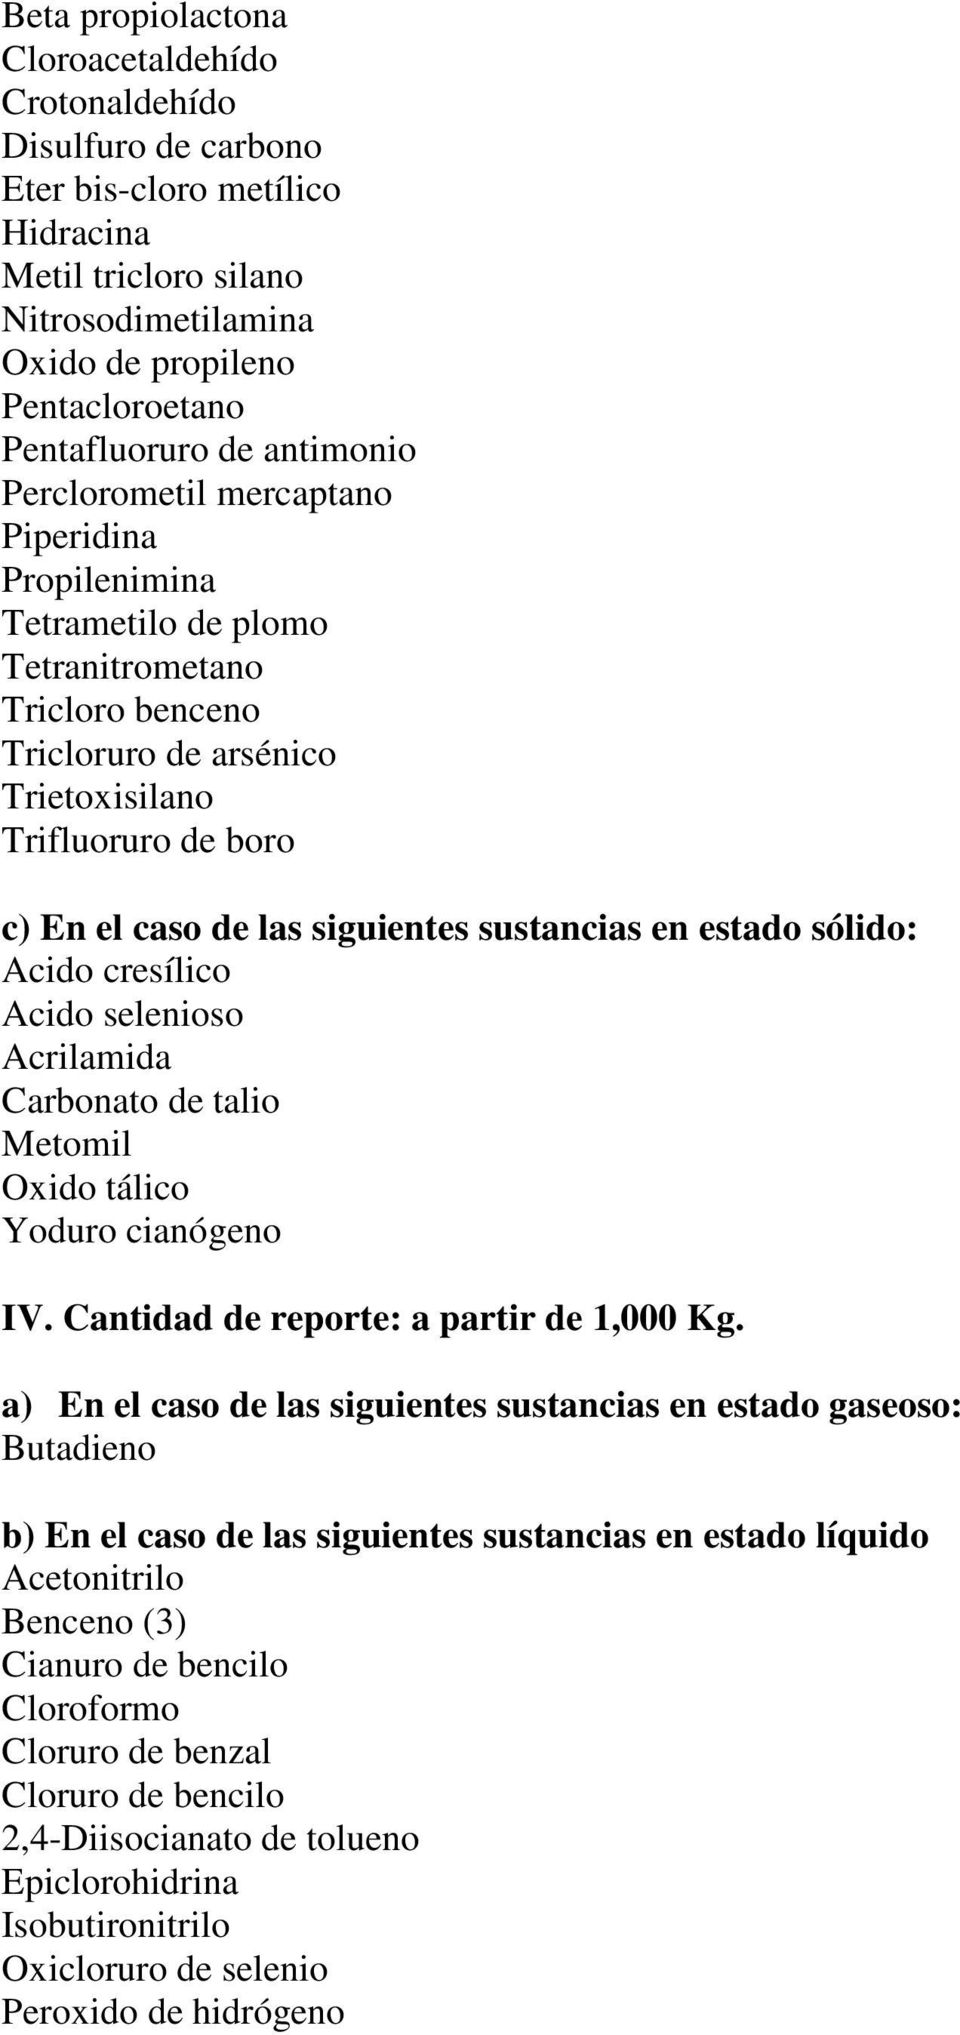 siguientes sustancias en estado sólido: Acido cresílico Acido selenioso Acrilamida Carbonato de talio Metomil Oxido tálico Yoduro cianógeno IV. Cantidad de reporte: a partir de 1,000 Kg.